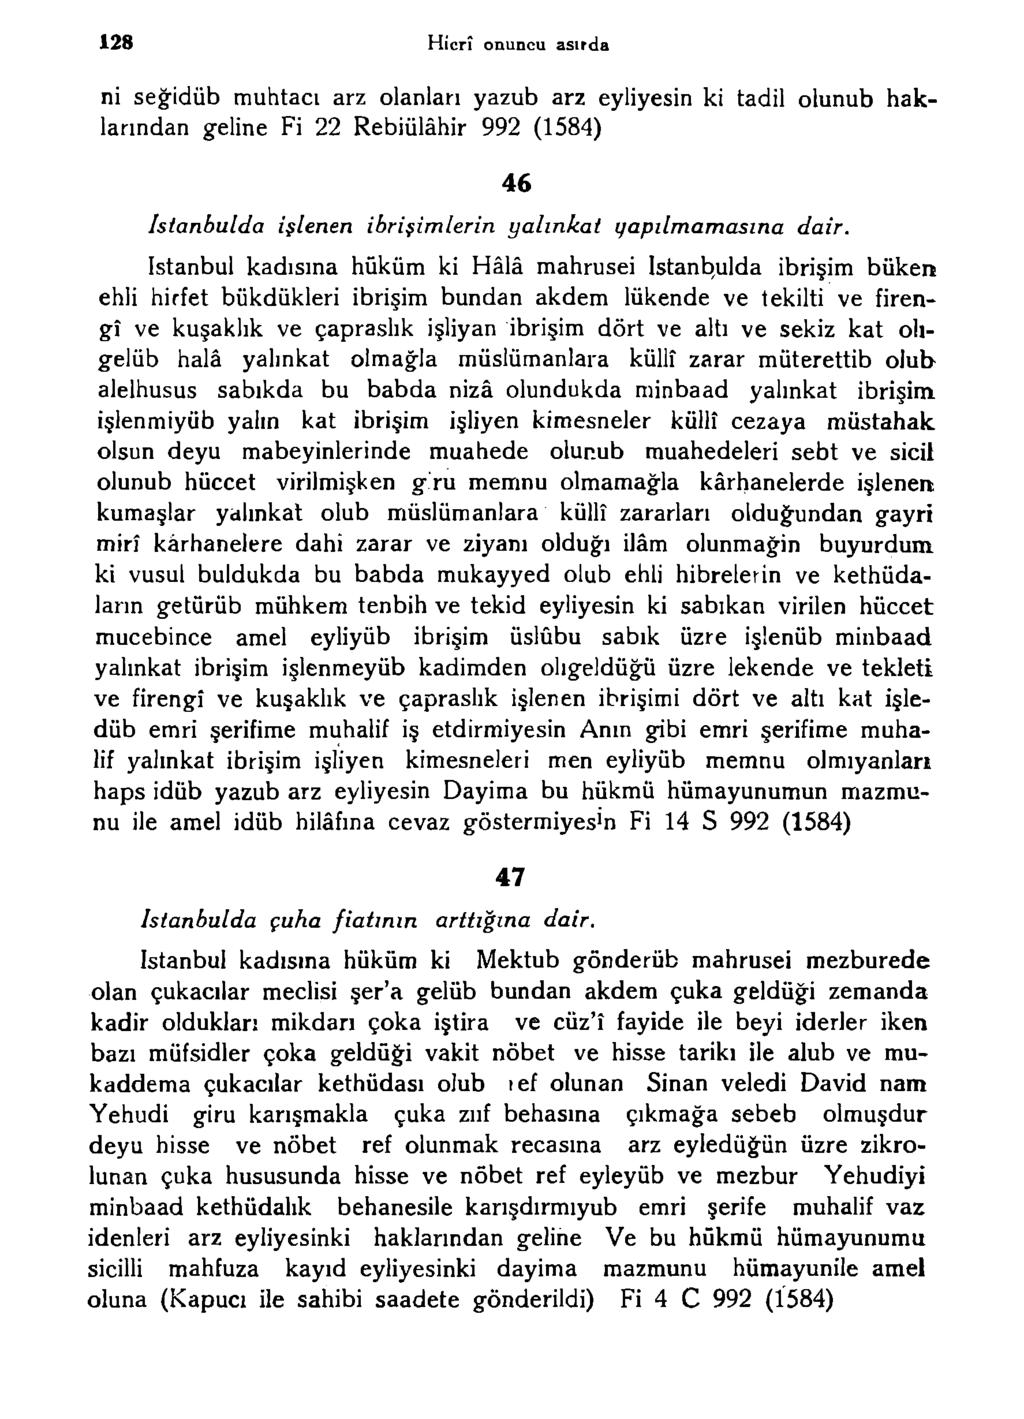 128 Hicrî onuncu asırda ni seğidüb muhtacı arz olanları yazub arz eyliyesin ki tadil olunub haklarından geline Fi 22 Rebiülâhir 992 (1584) Istanbulda işlenen ibrişimlerin yalınkat yapılmamasına dair.